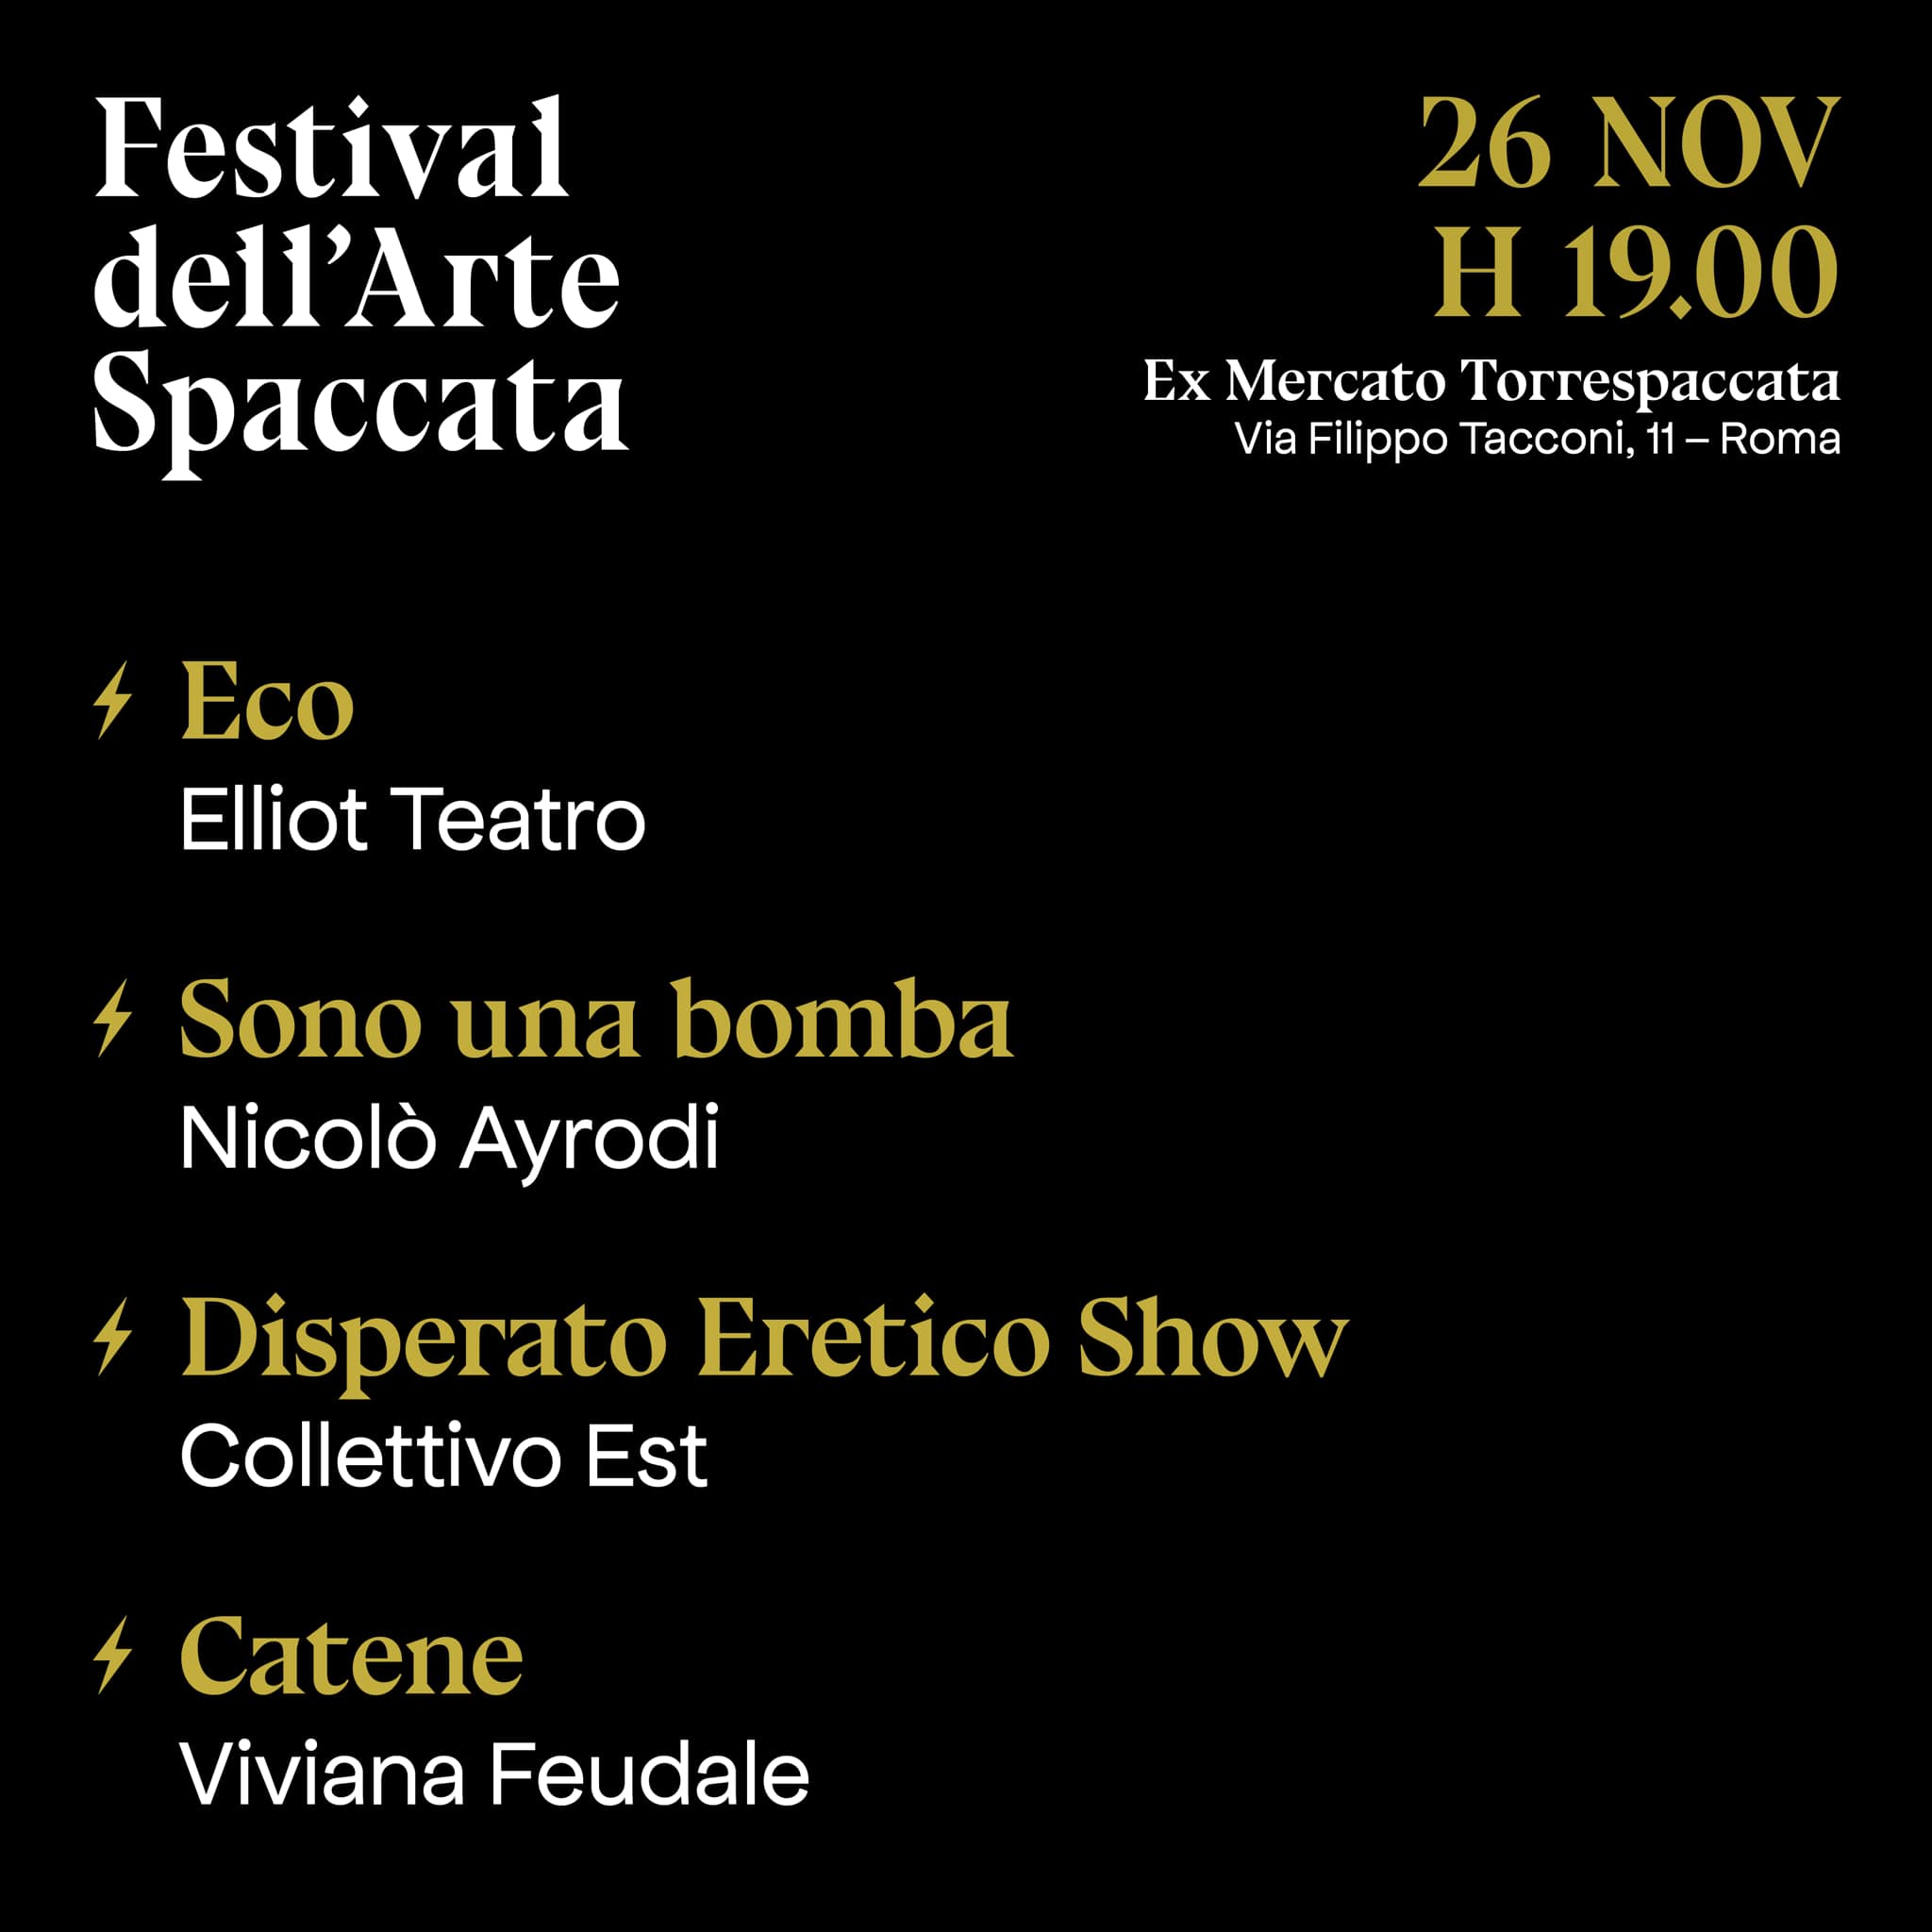 Festival dell'Arte Spaccata, Corti Teatrali, 26 novembre 2021